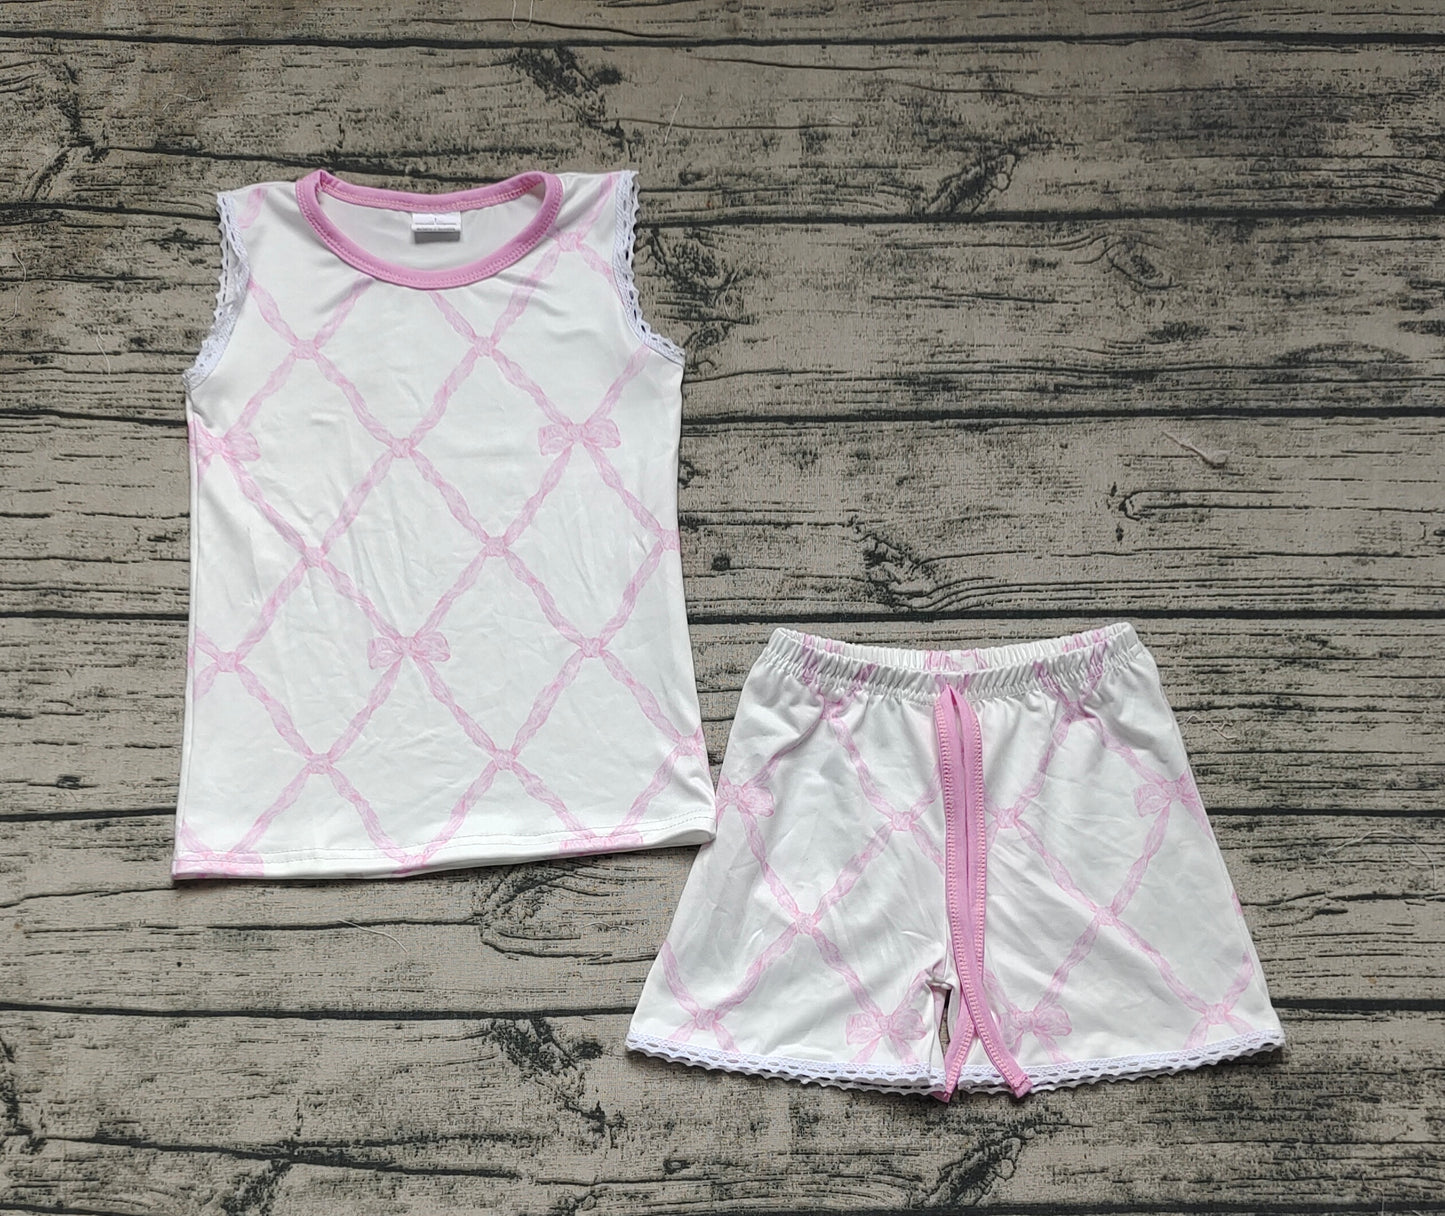 Baby Girls Bamboo Pink Bows Shirt Ruffle Shorts Clothes Sets